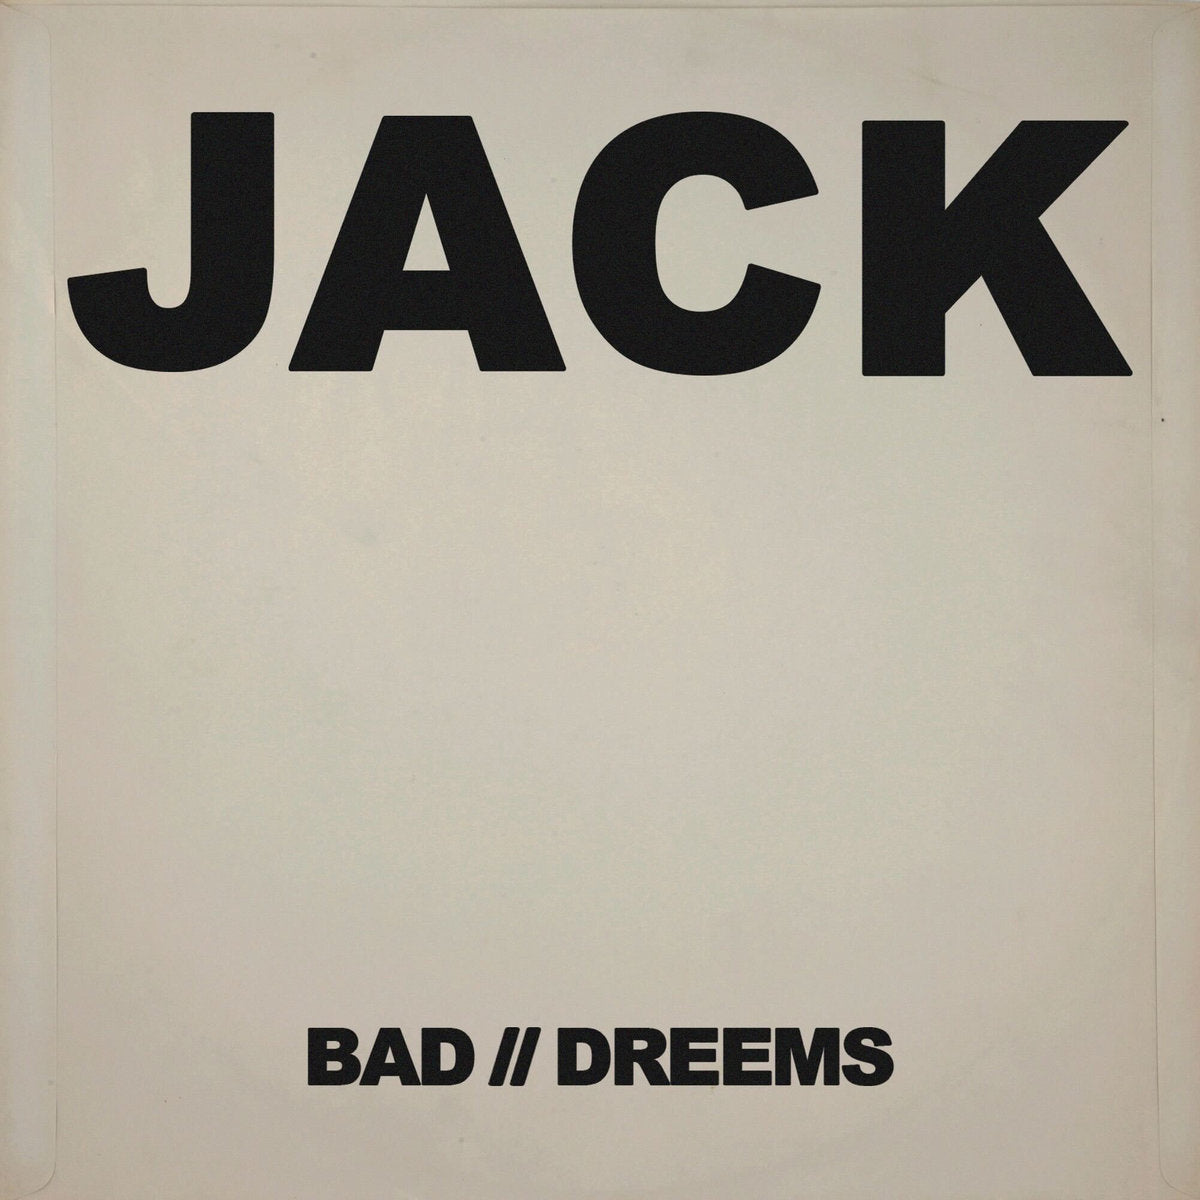 BAD // DREEMS - "JACK" 7"